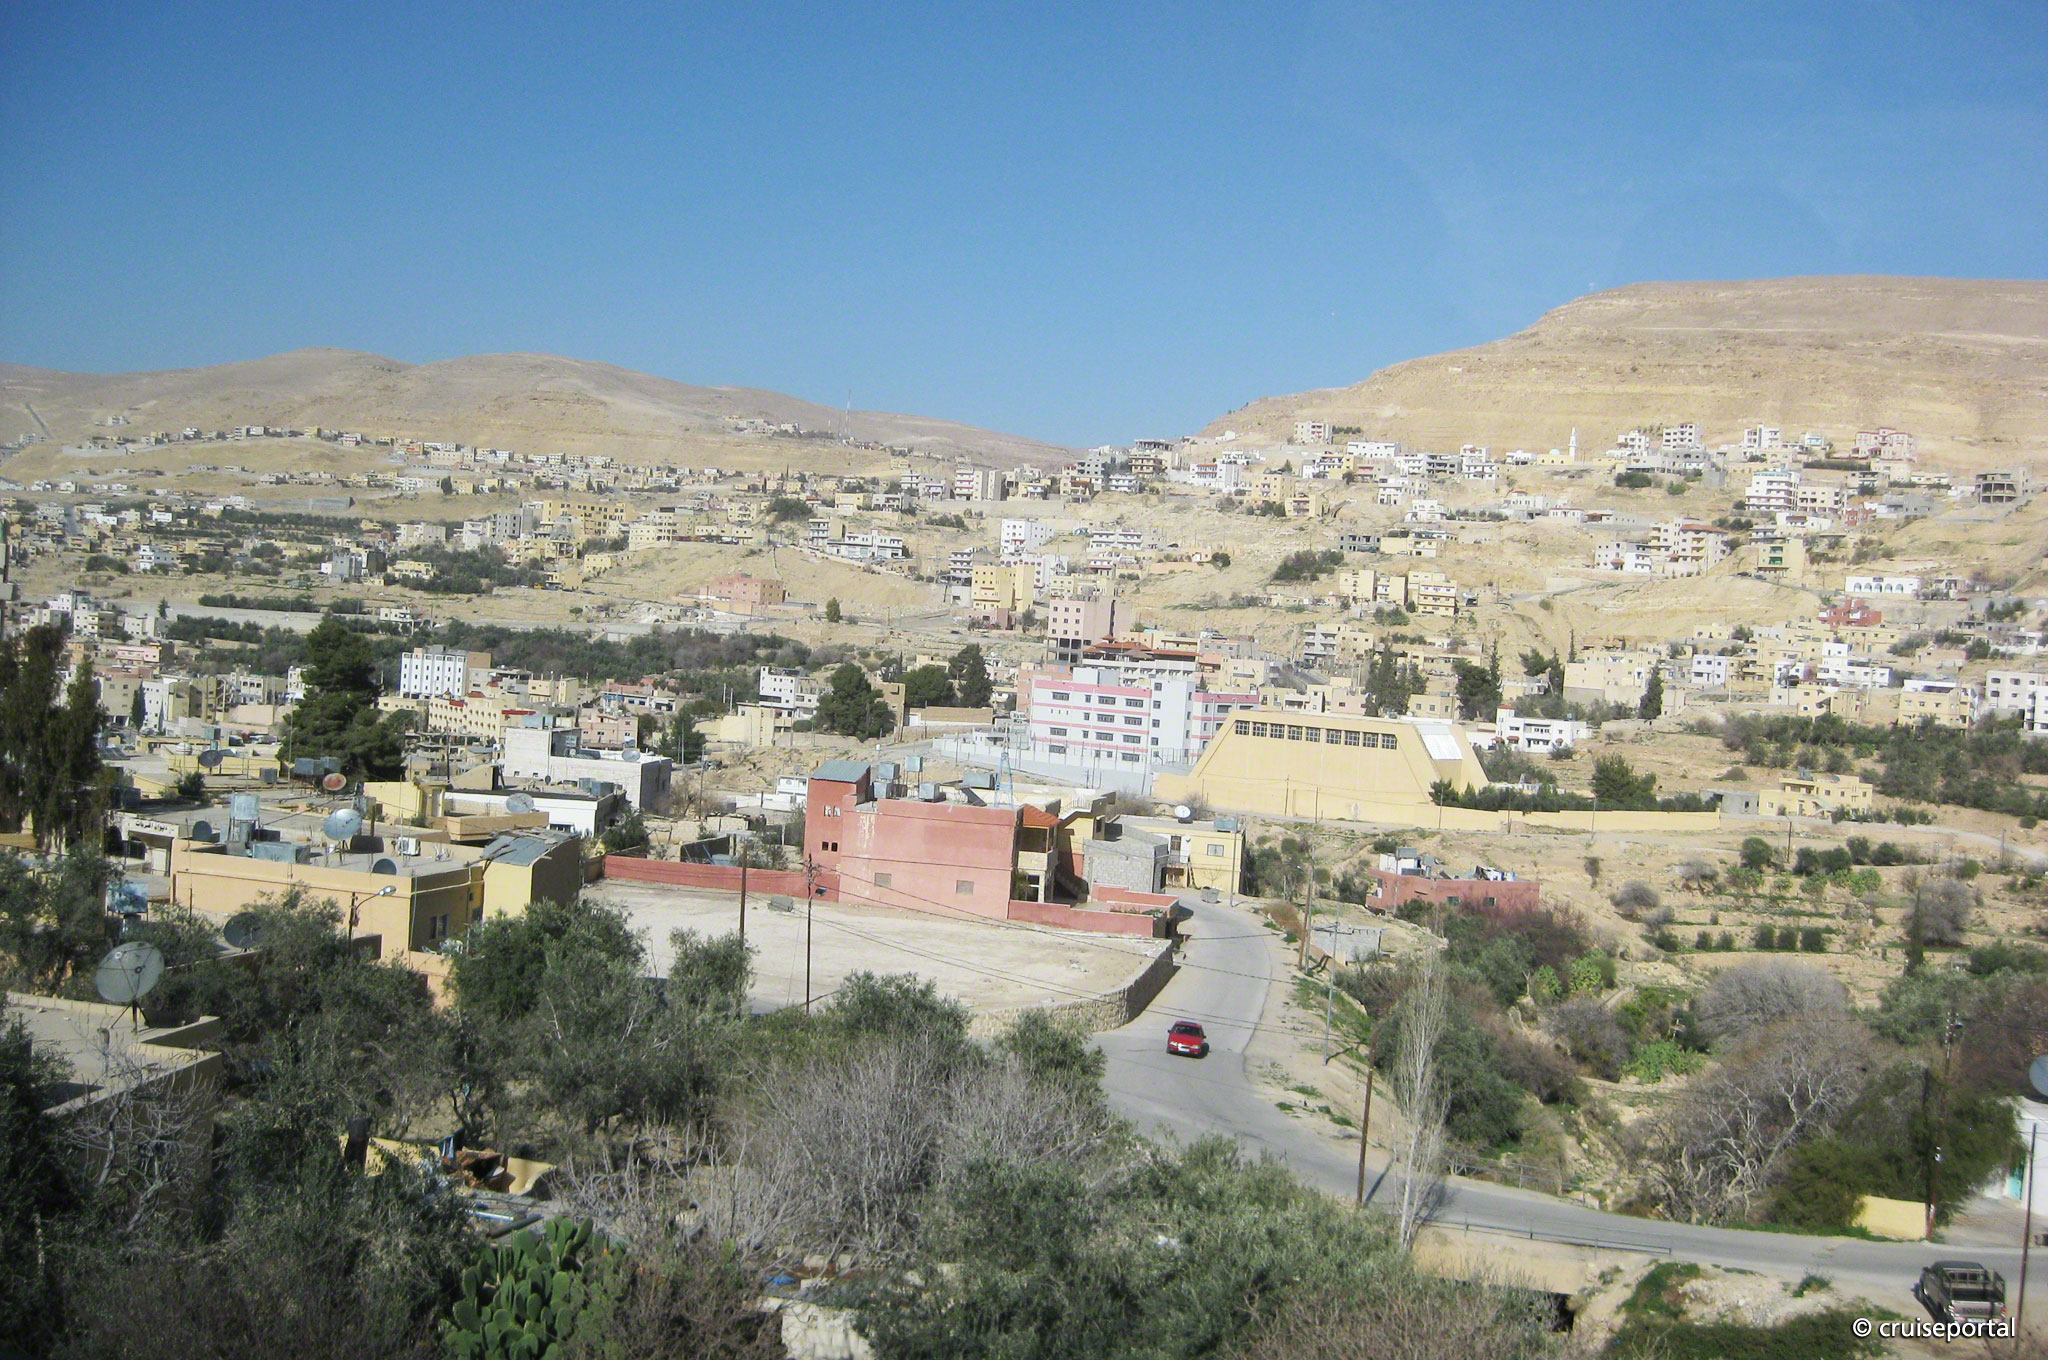 Aqaba (Petra)